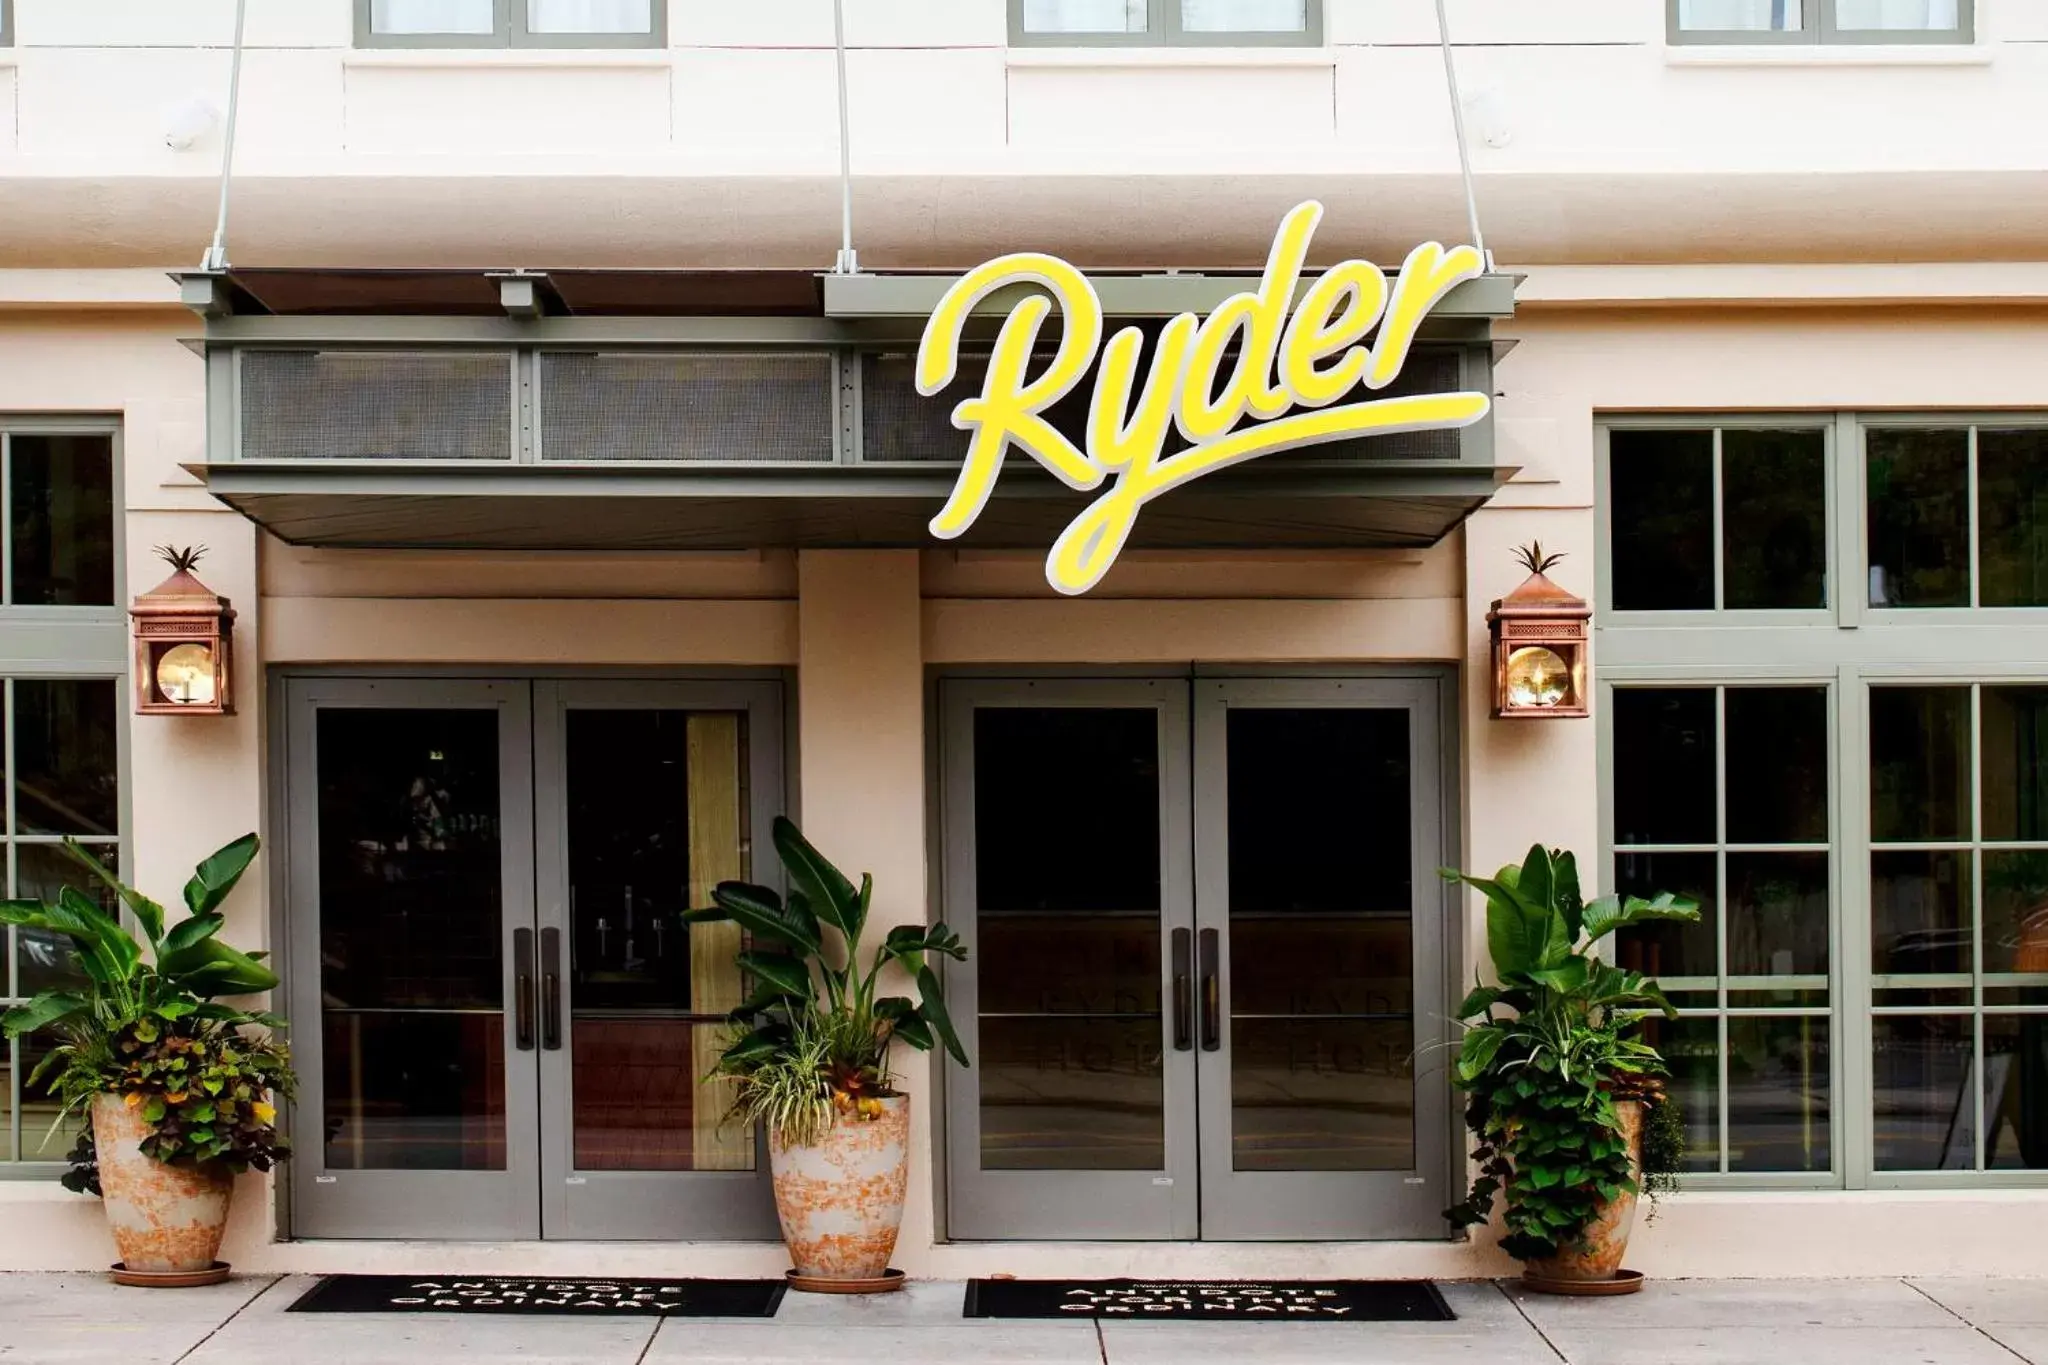 Facade/entrance in The Ryder Hotel